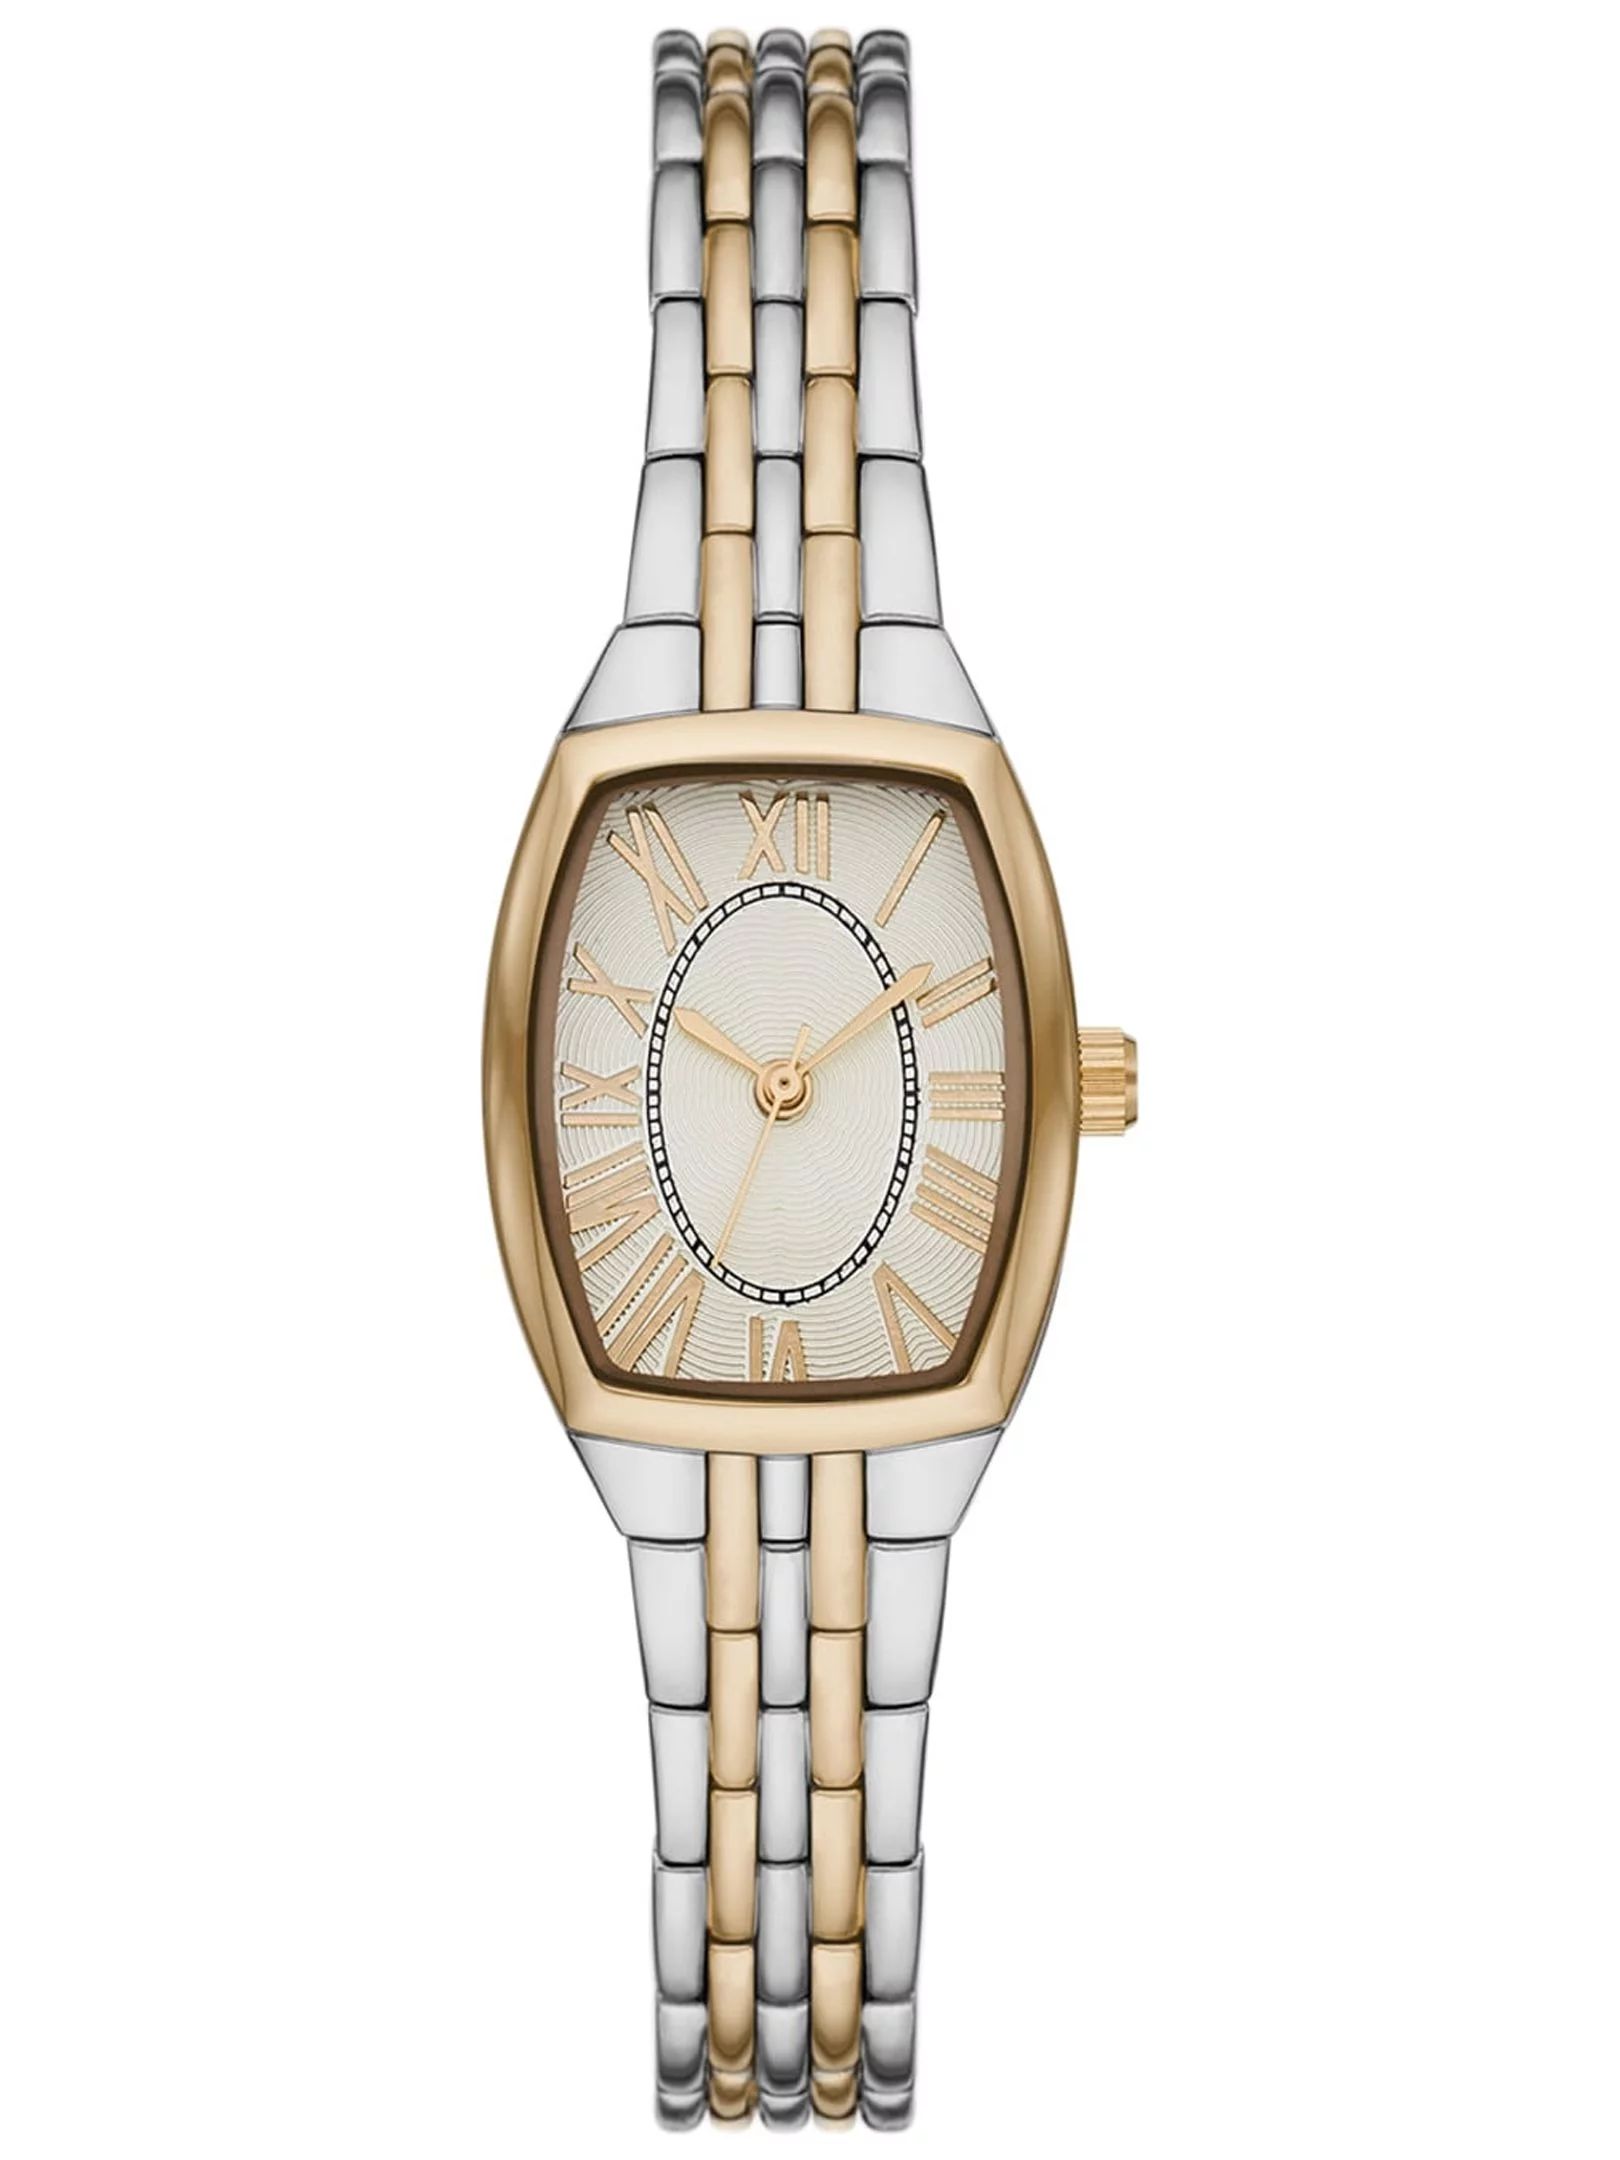 Time & Tru Women's Wristwatch: Two Tone Silver and Gold Barrel Case Bracelet Watch (FMDOTT077) | Walmart (US)